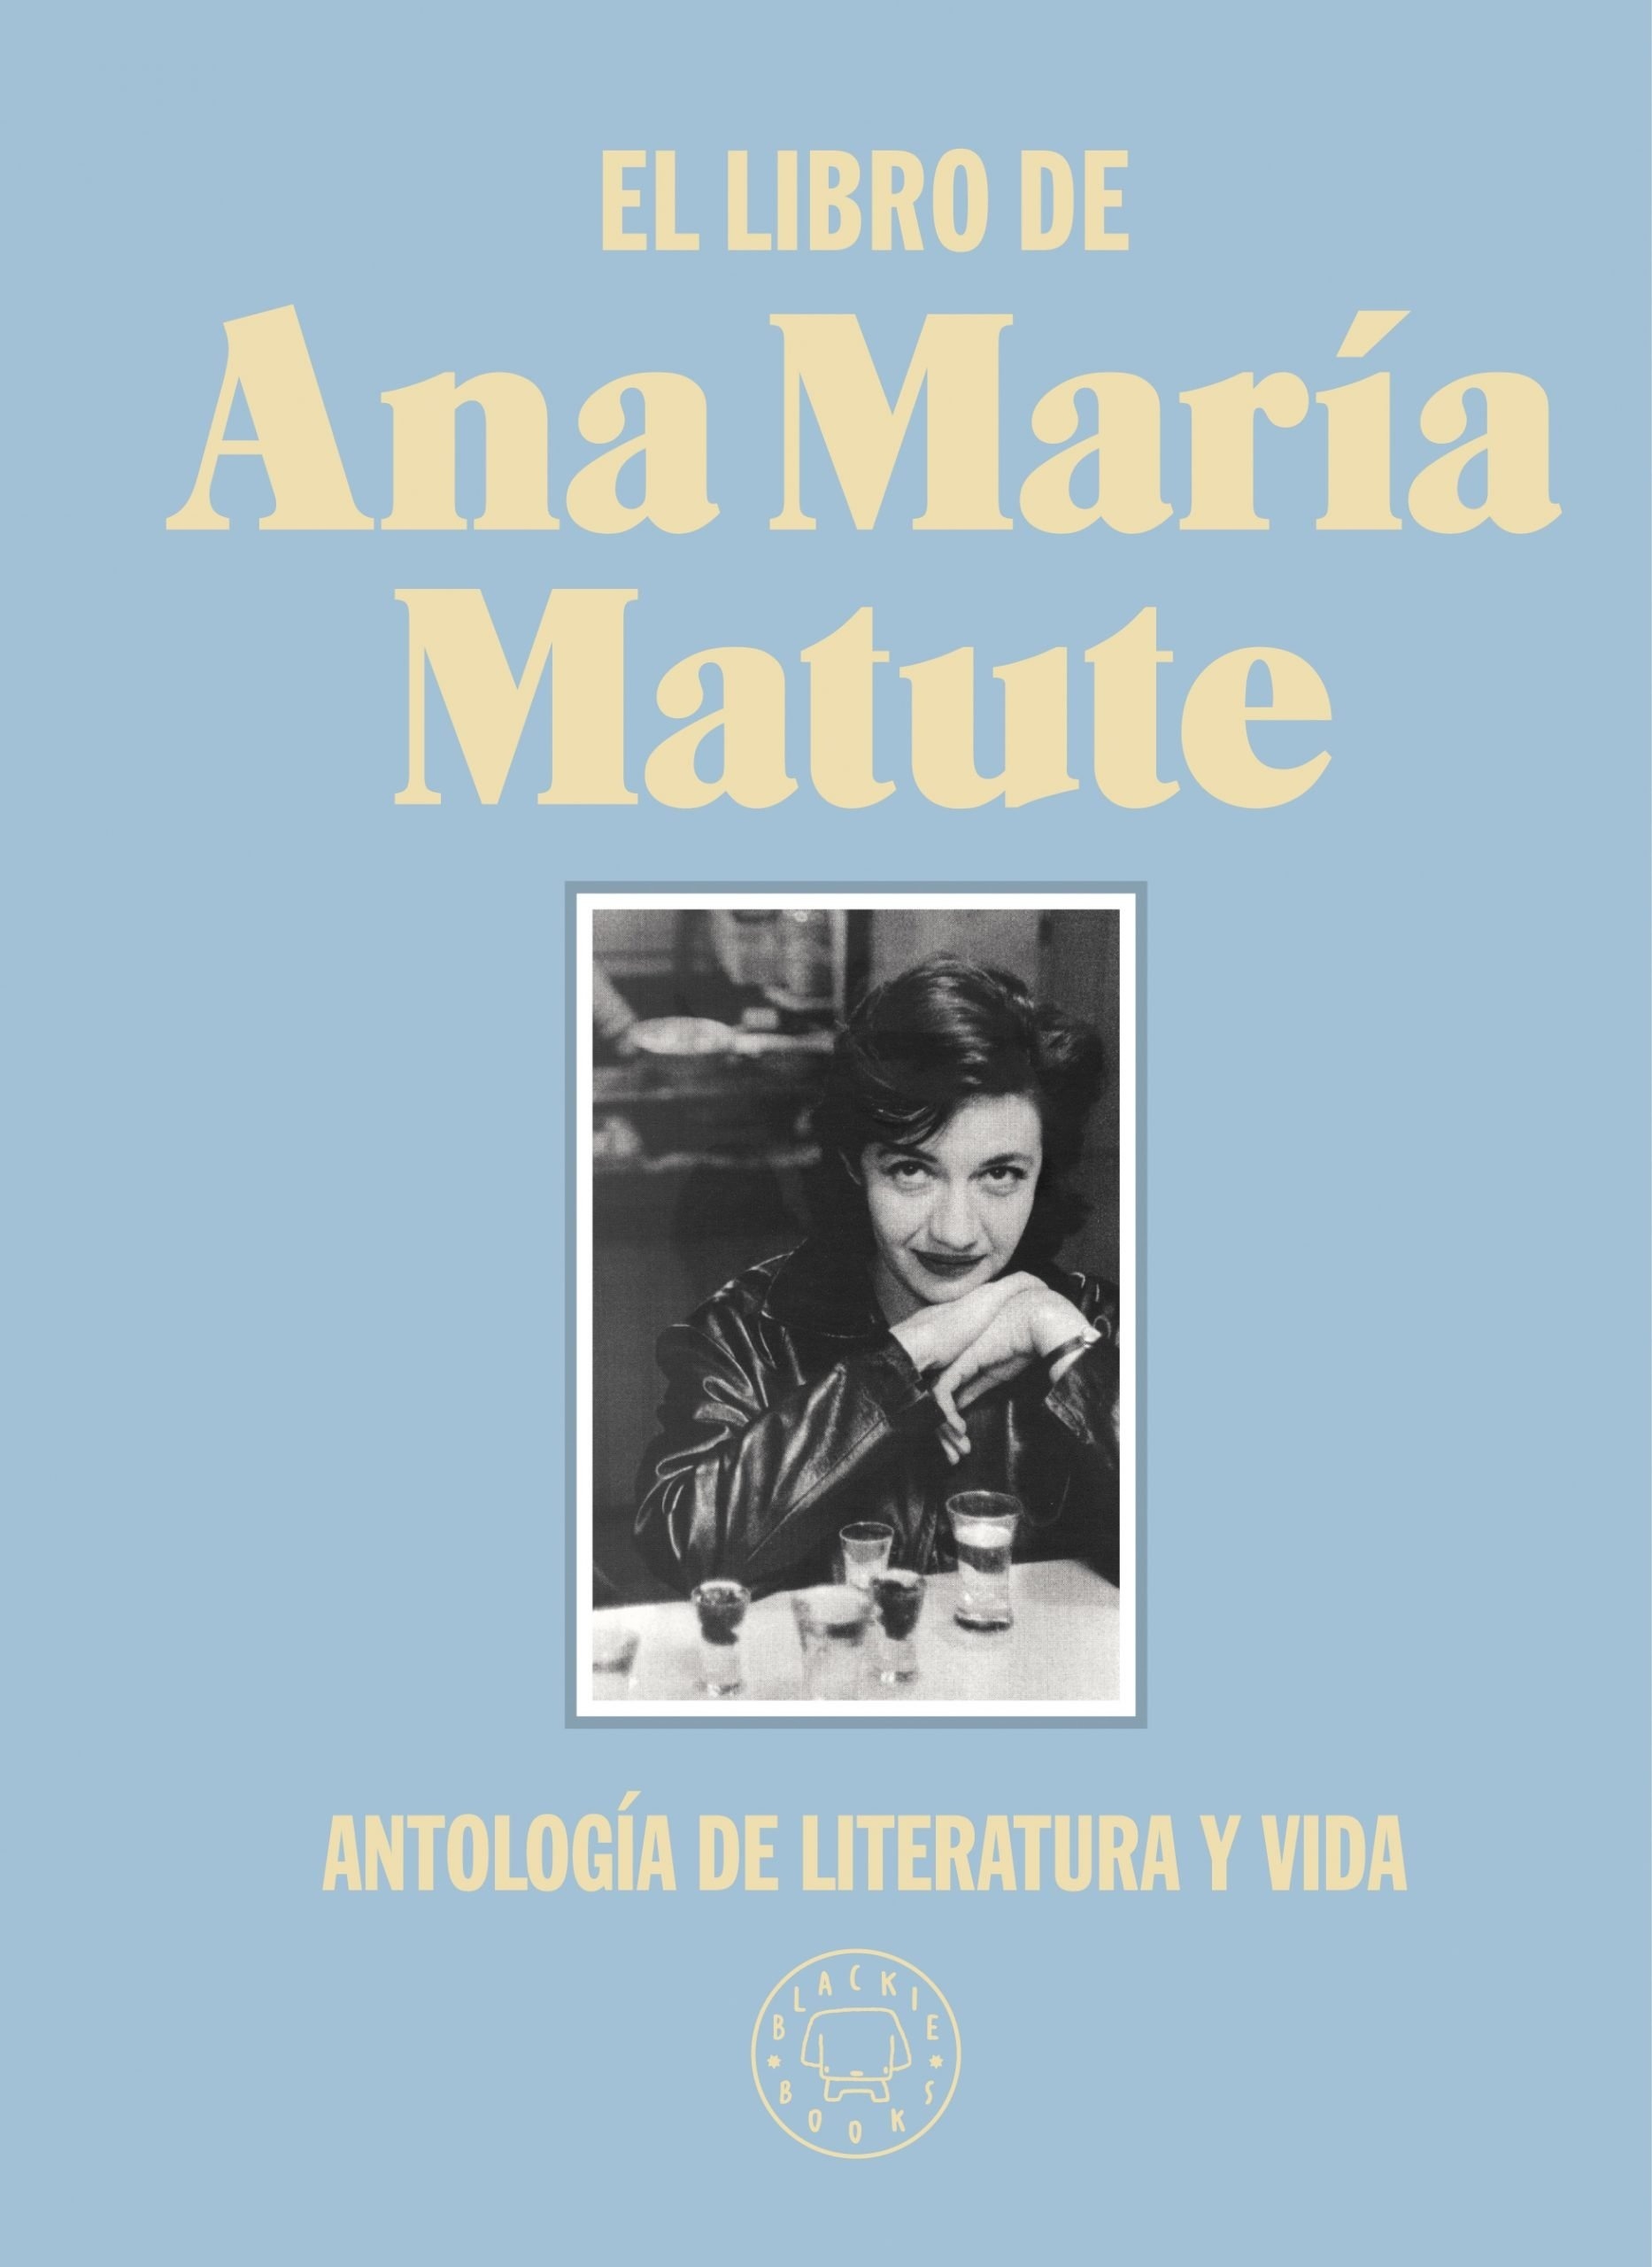 Libro de Ana María Matute, El "Antología de literatura y vida". 